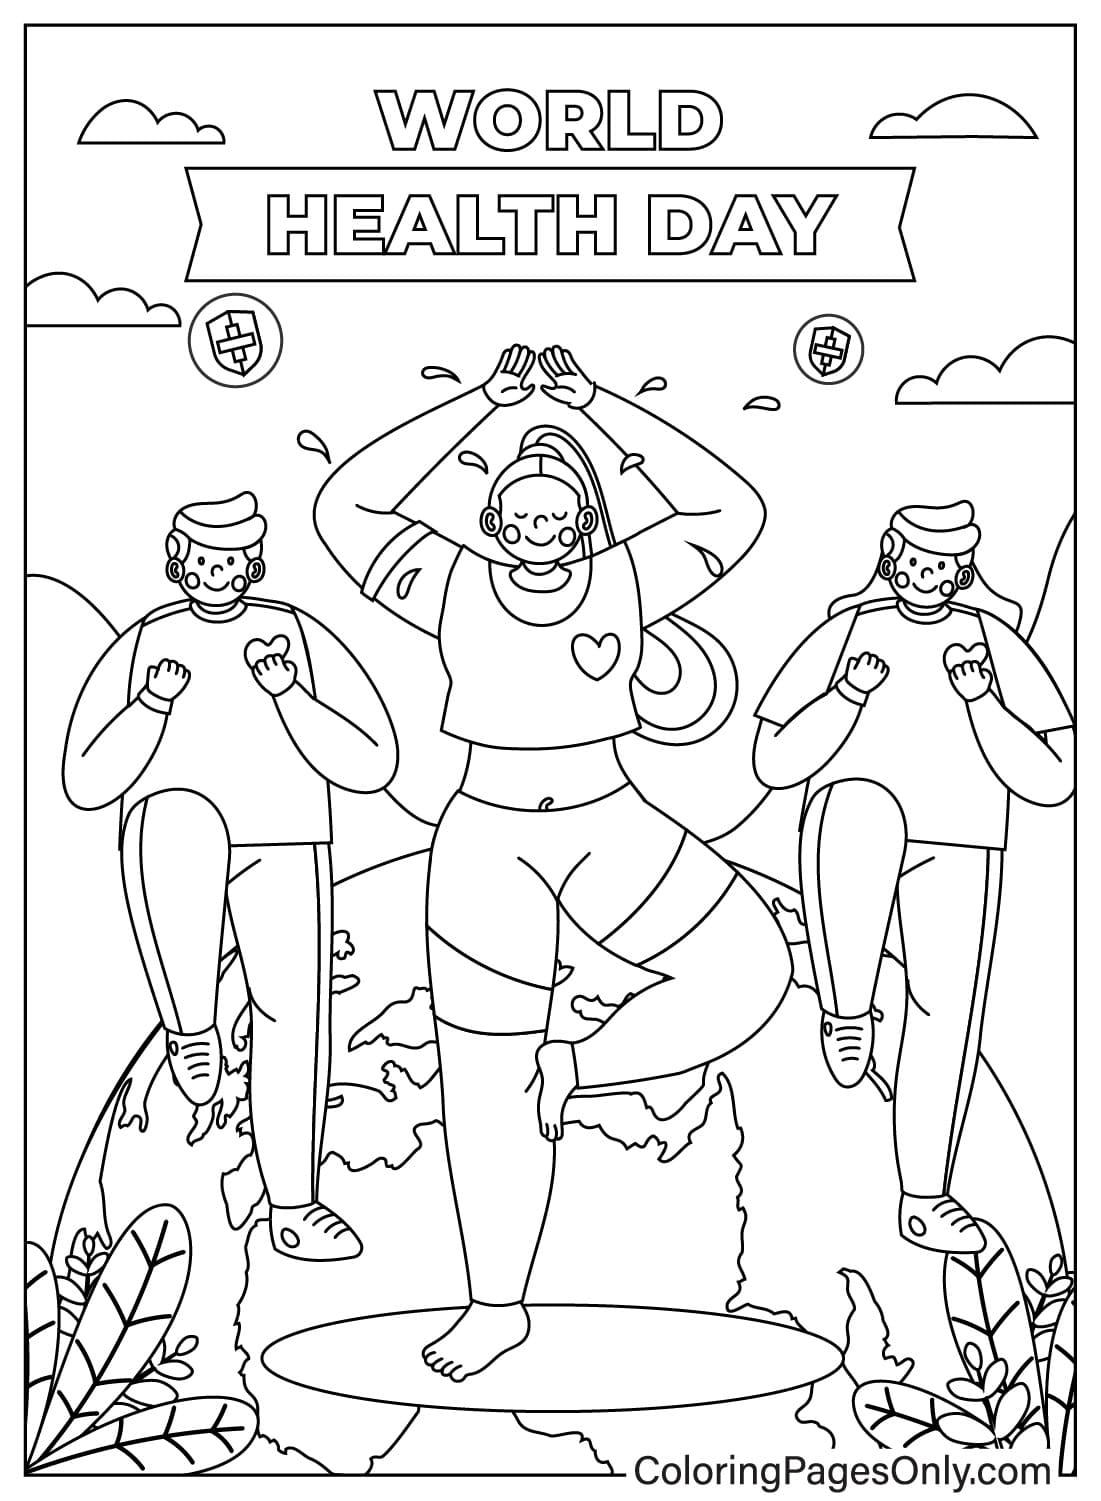 Раскраска для детей, посвященная Всемирному дню здоровья, от Всемирного дня здоровья